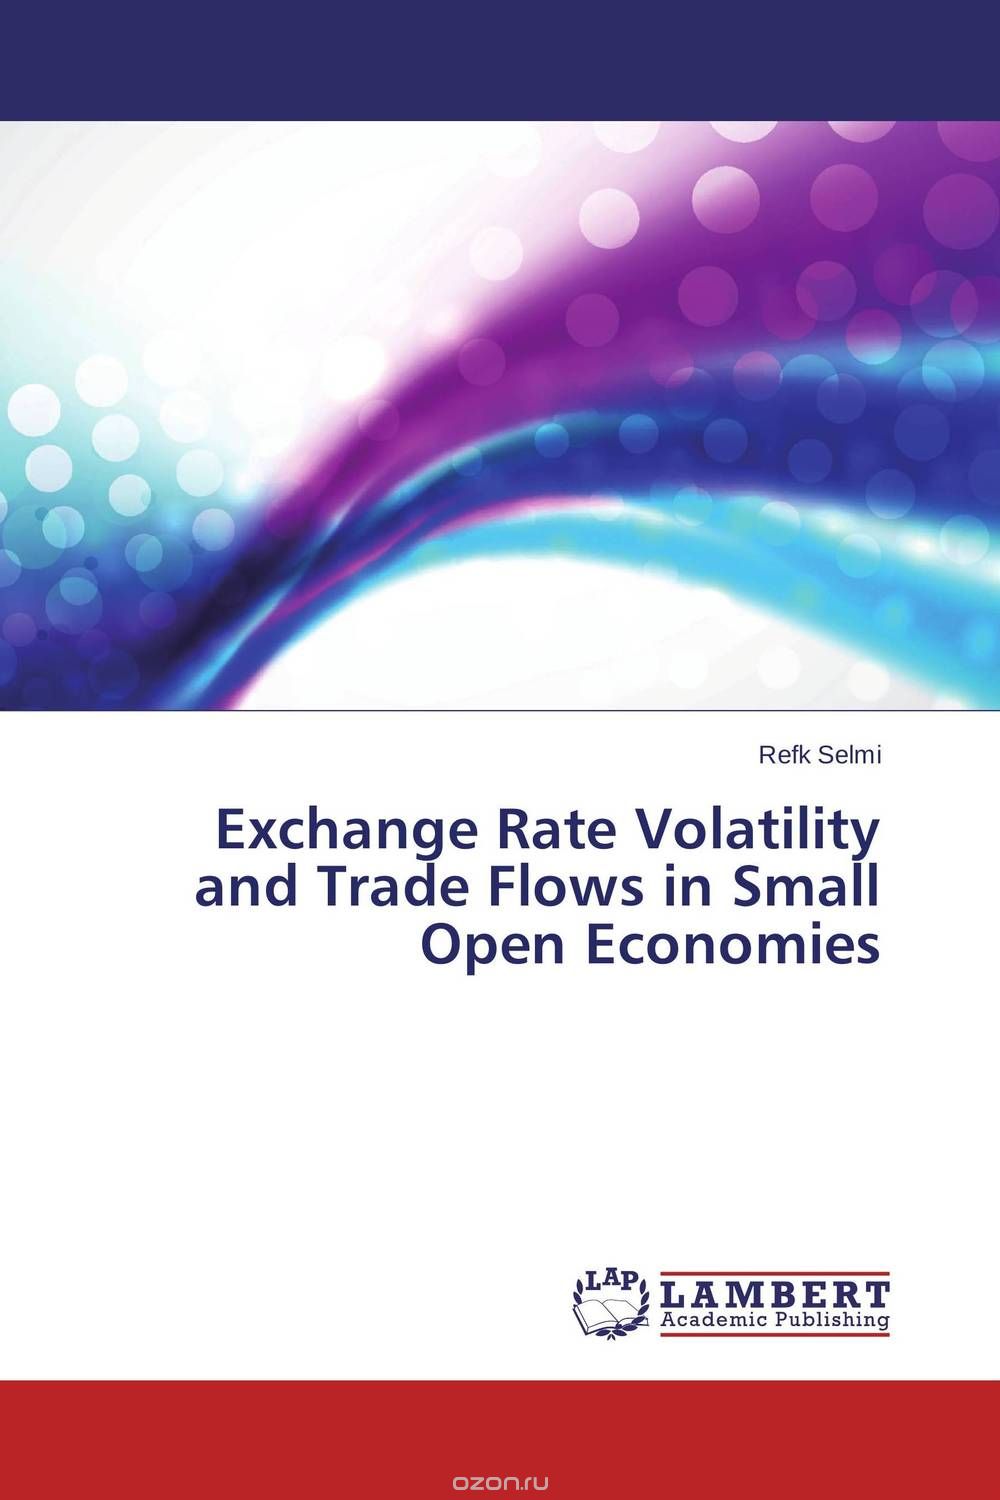 Скачать книгу "Exchange Rate Volatility and Trade Flows in Small Open Economies"